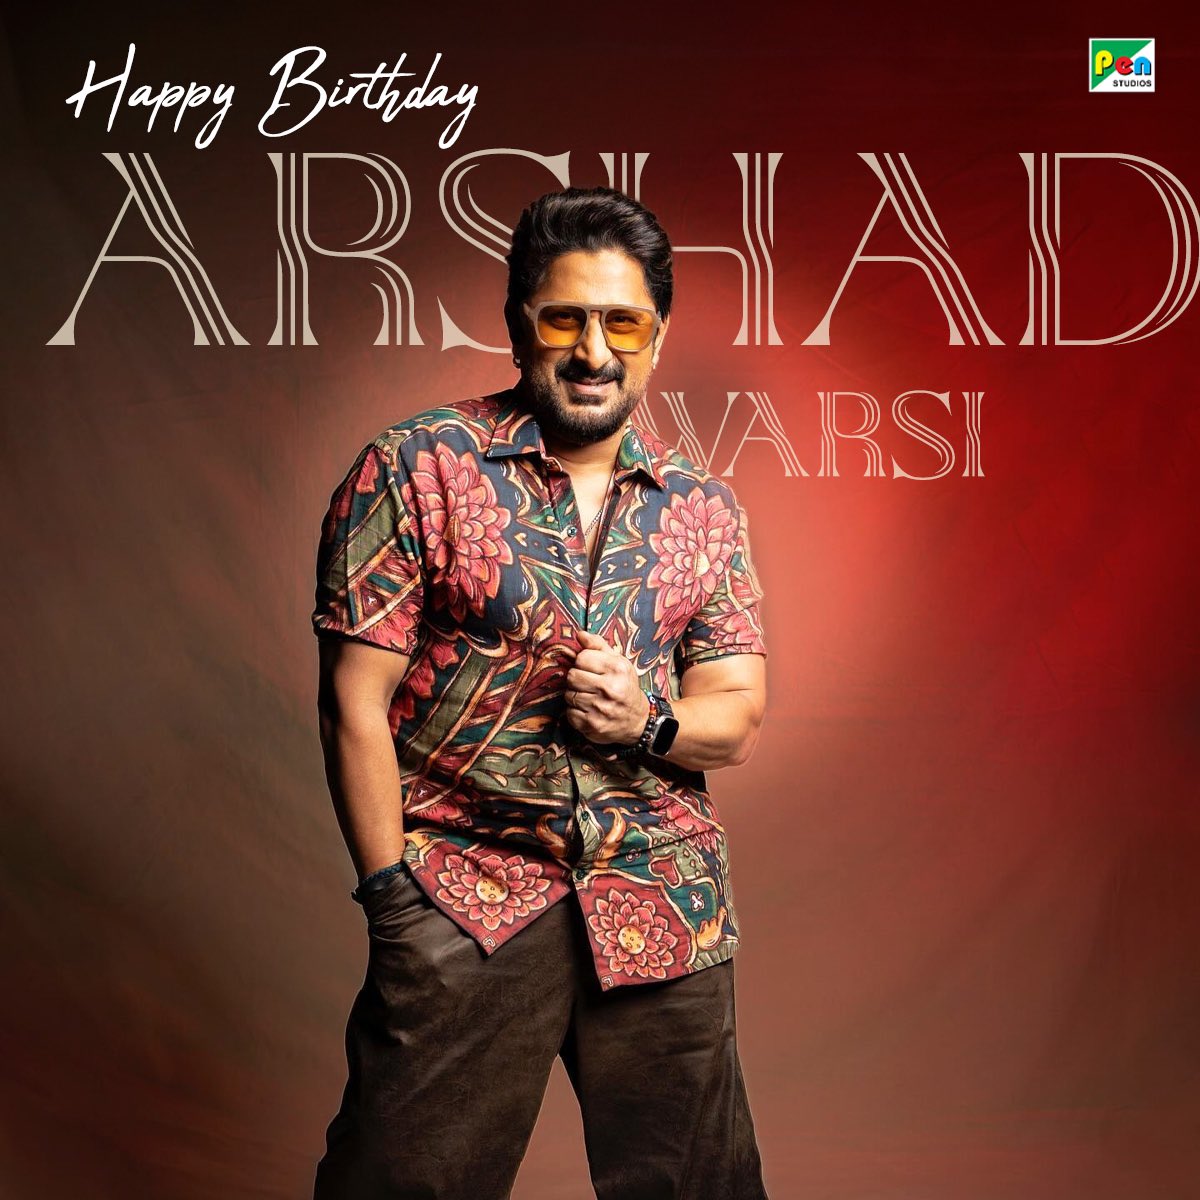 Aapka wit aur charm humein hamesha hasa deta hain 🎊 Happy Birthday Arshad Warsi! @ArshadWarsi #HappyBirthdayArshadWarsi #PenMovies